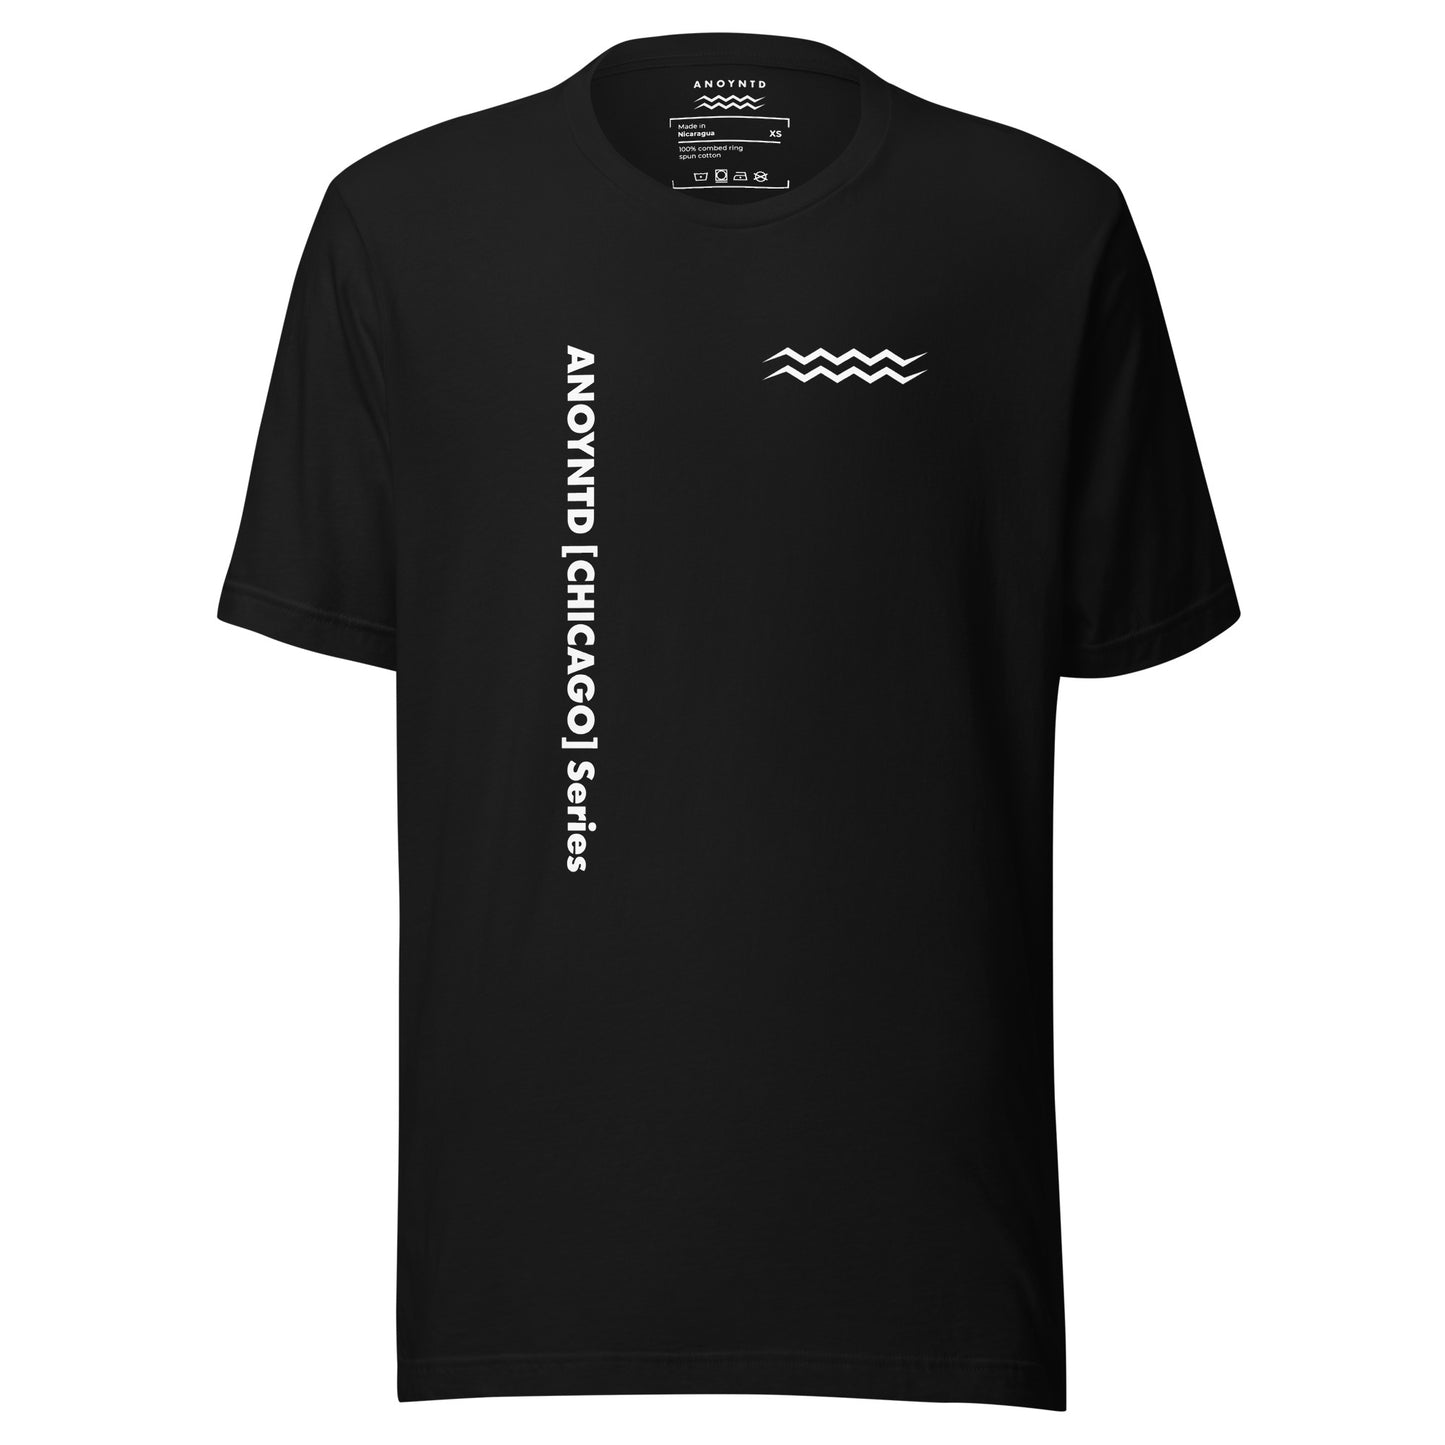 ANOYNTD [CHICAGO] Series Unisex t-shirt